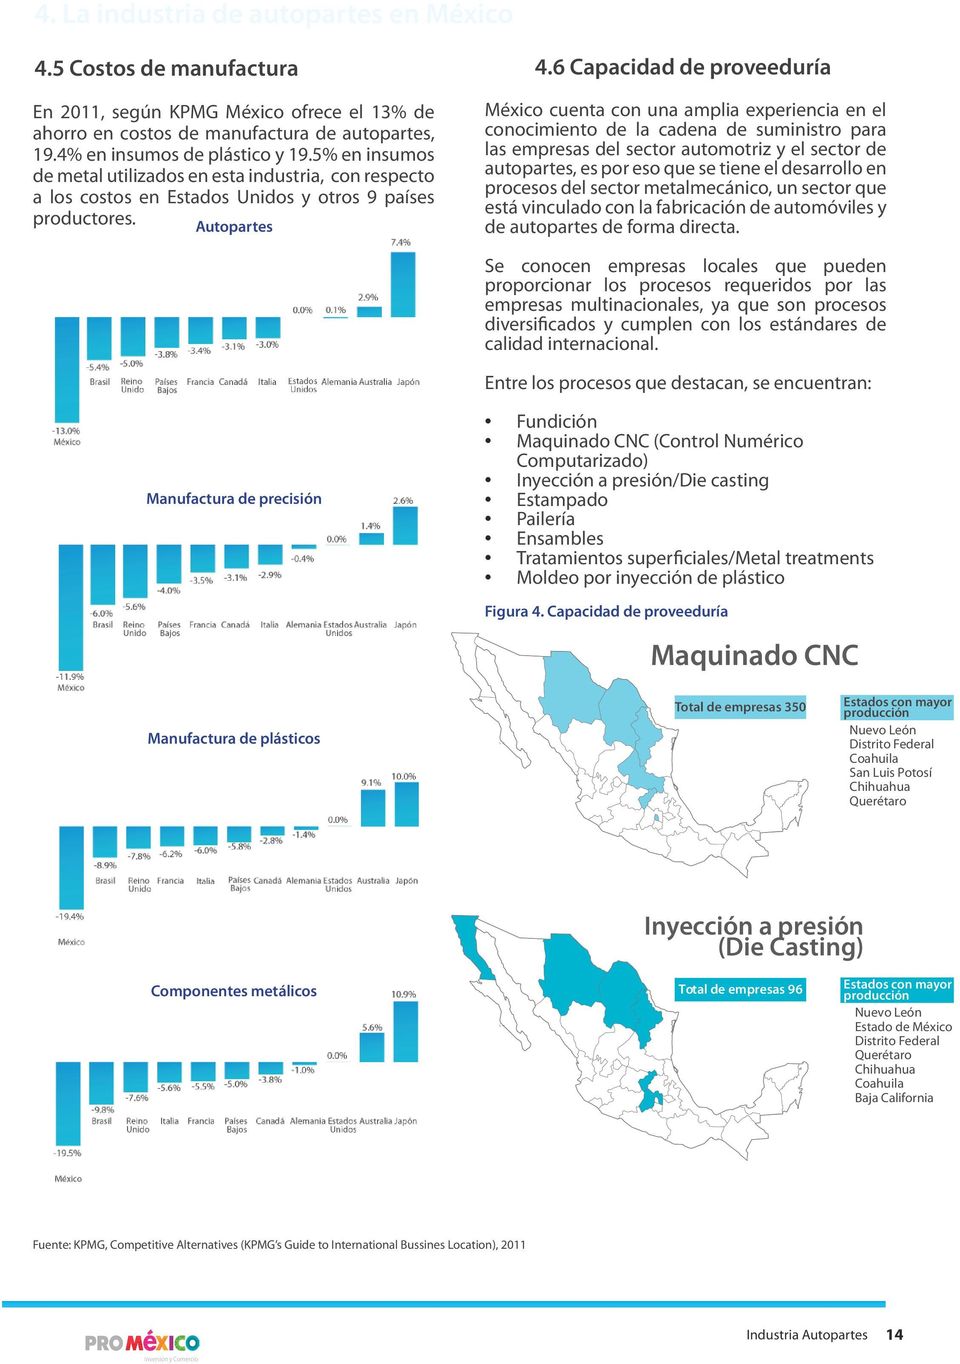 6 Capacidad de proveeduría México cuenta con una amplia experiencia en el conocimiento de la cadena de suministro para las empresas del sector automotriz y el sector de autopartes, es por eso que se